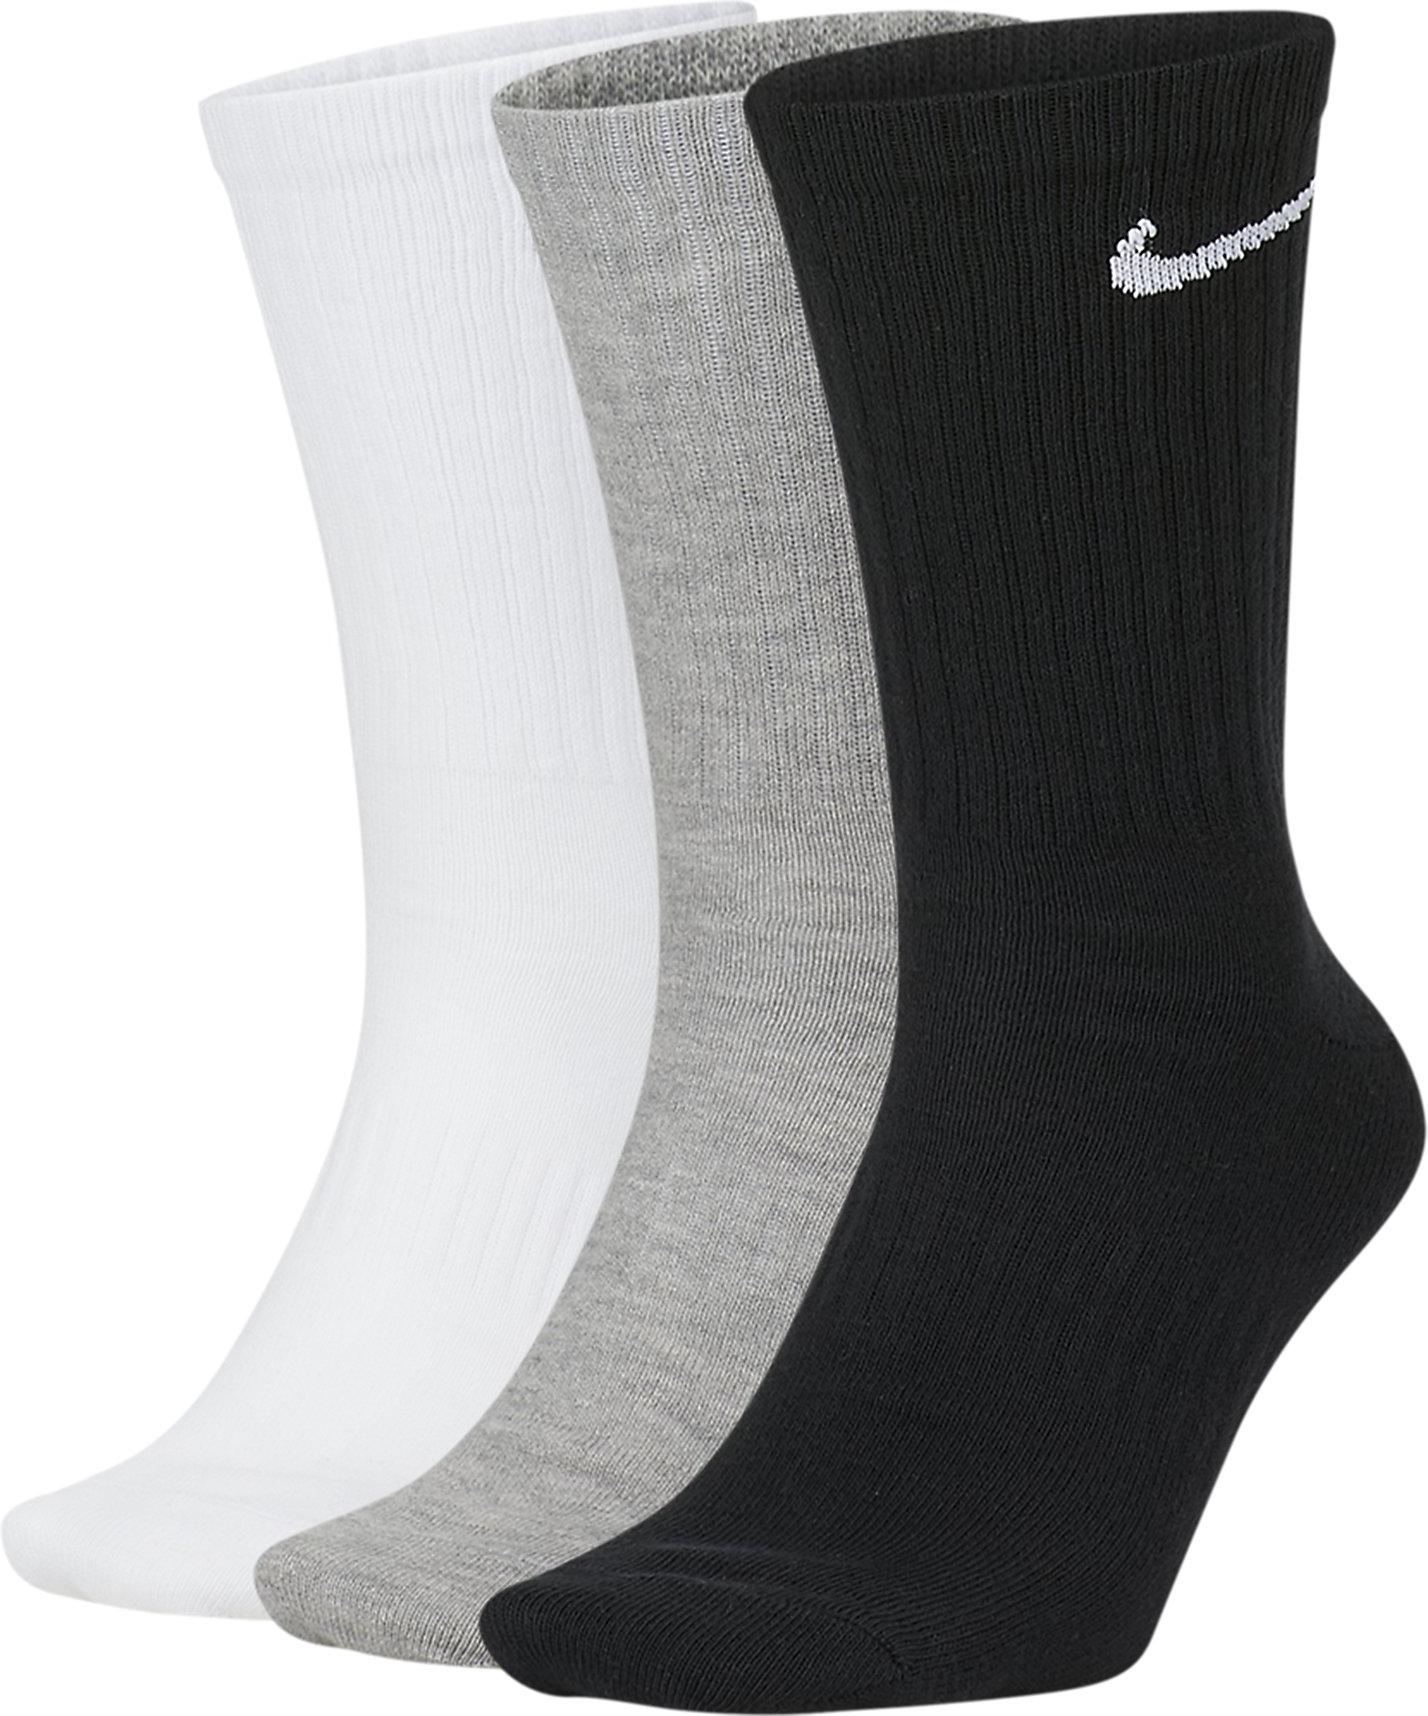 Sokken Nike Everyday 3 pack